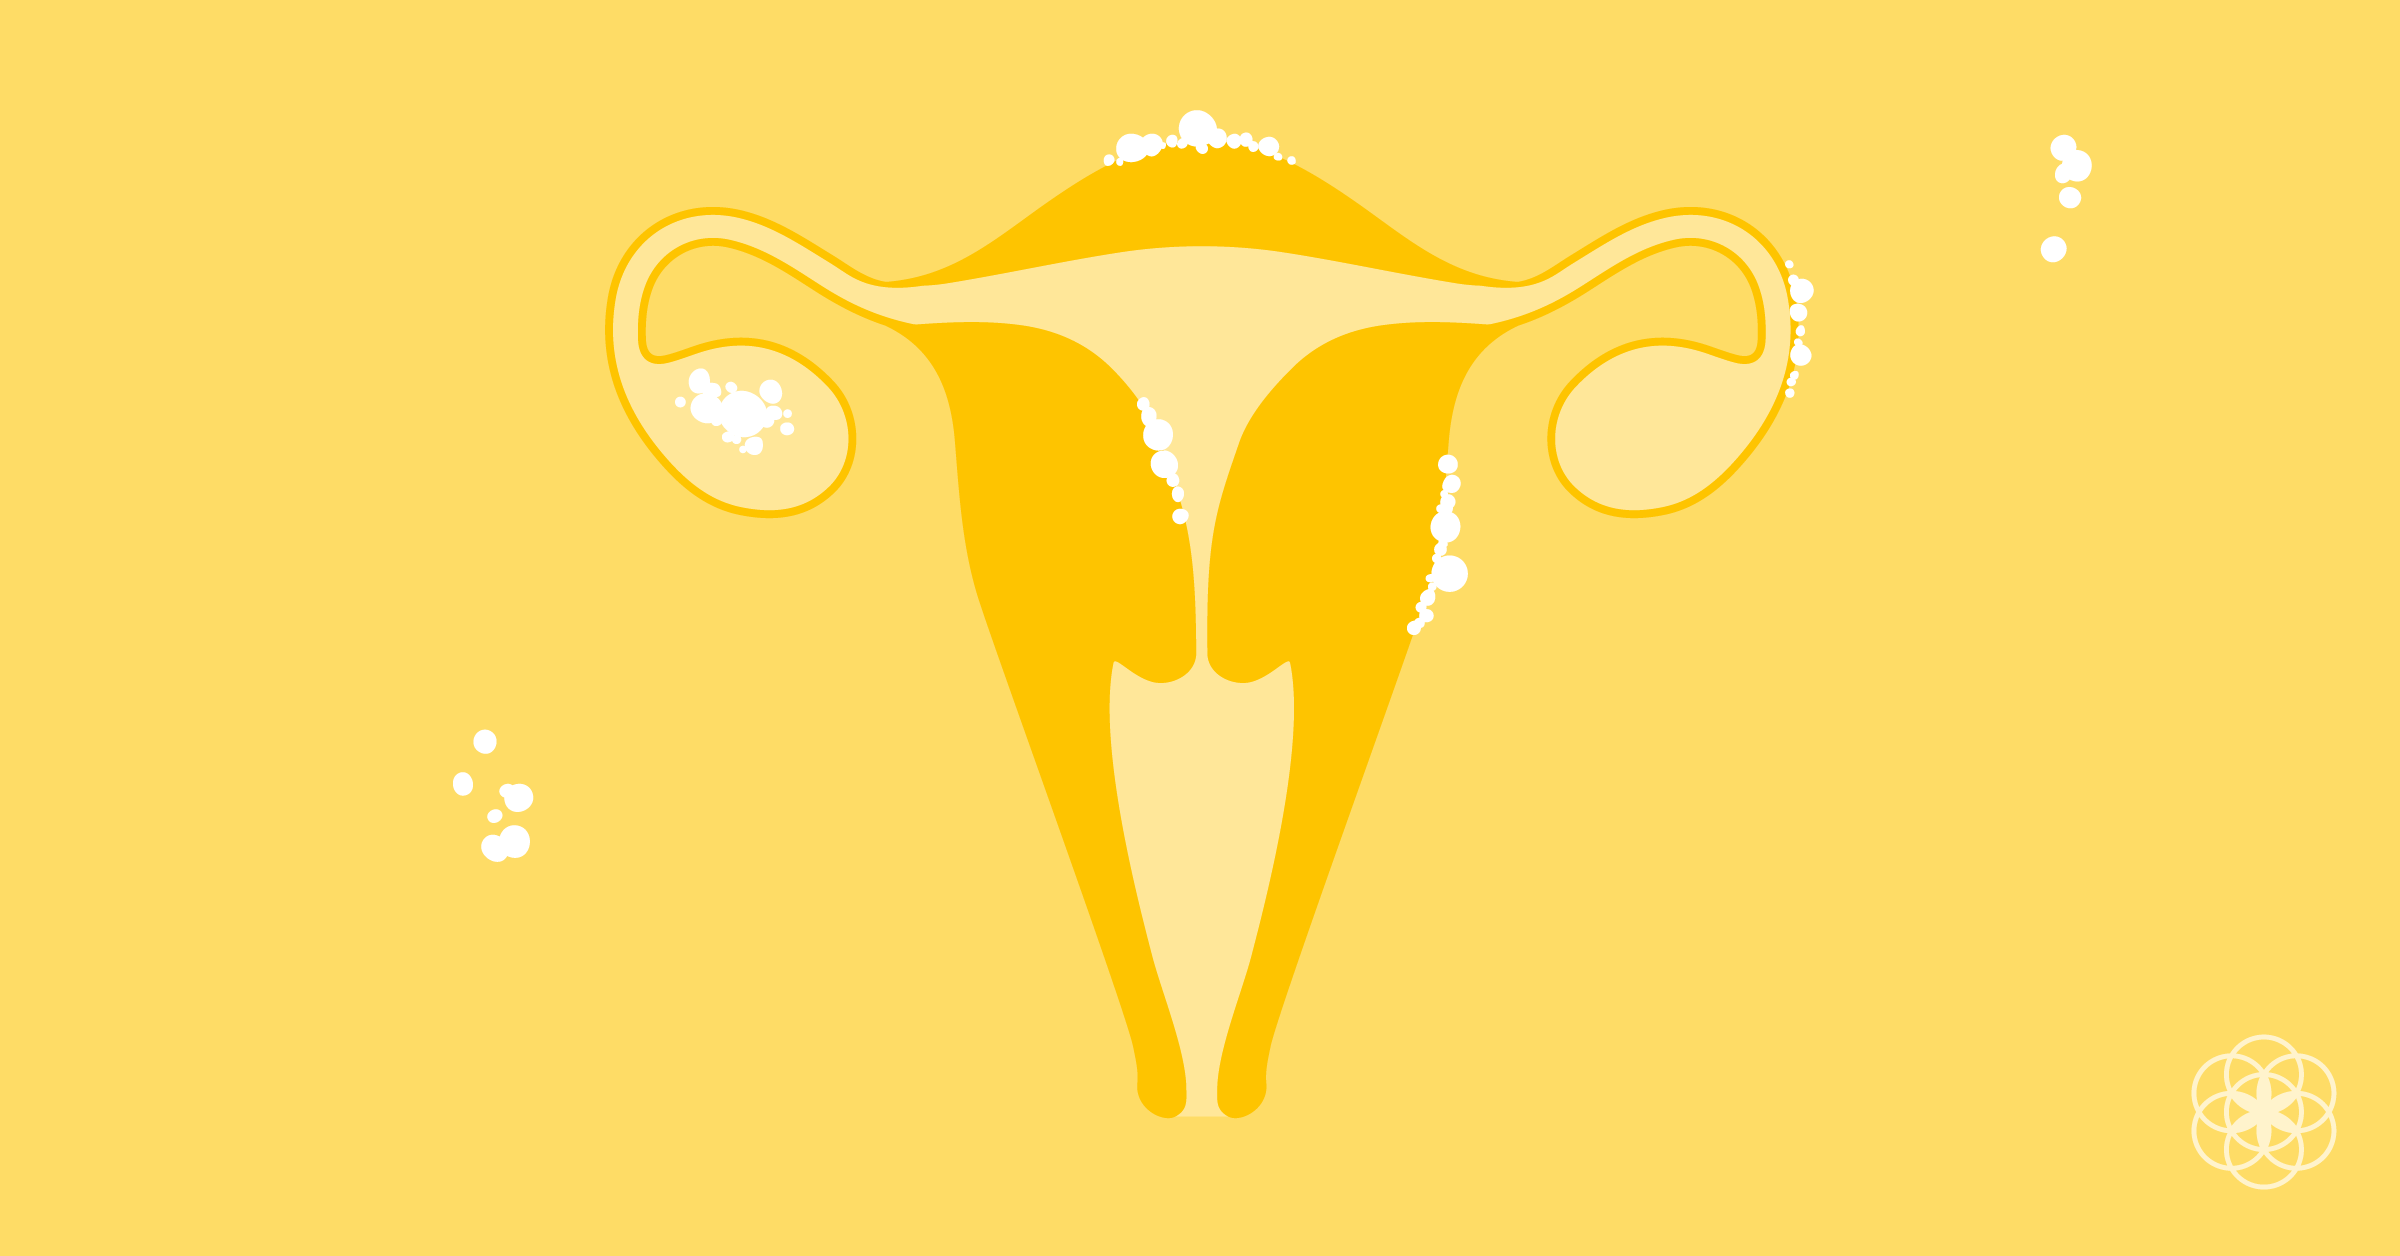 Endometriosis_101_fb_2x.png (2400×1256)